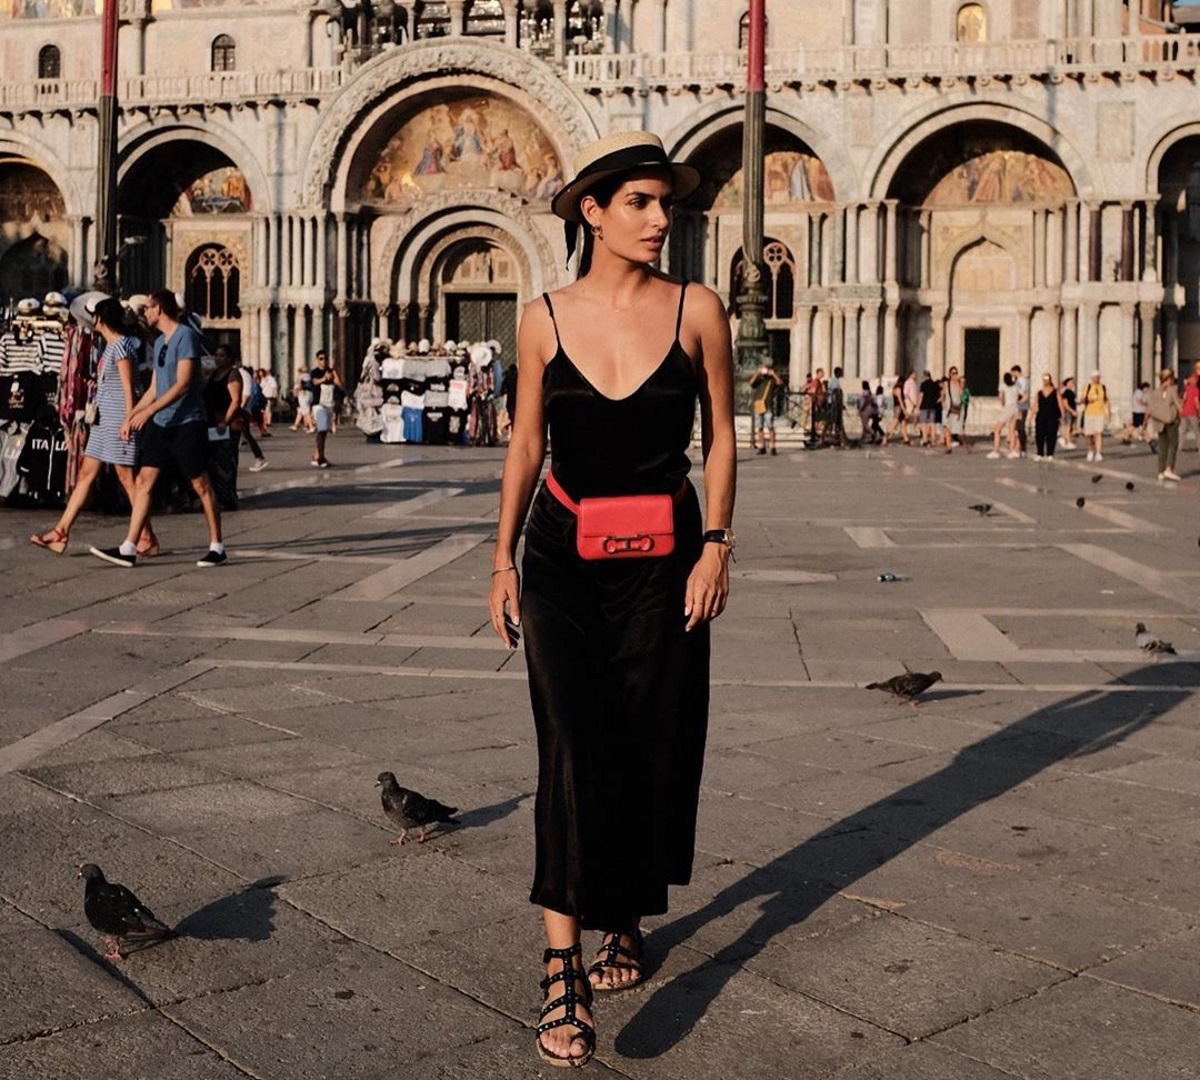 Τόνια Σωτηροπούλου: Chic εμφάνιση στο Φεστιβάλ Κινηματογράφου της Βενετίας! [pics,vid]